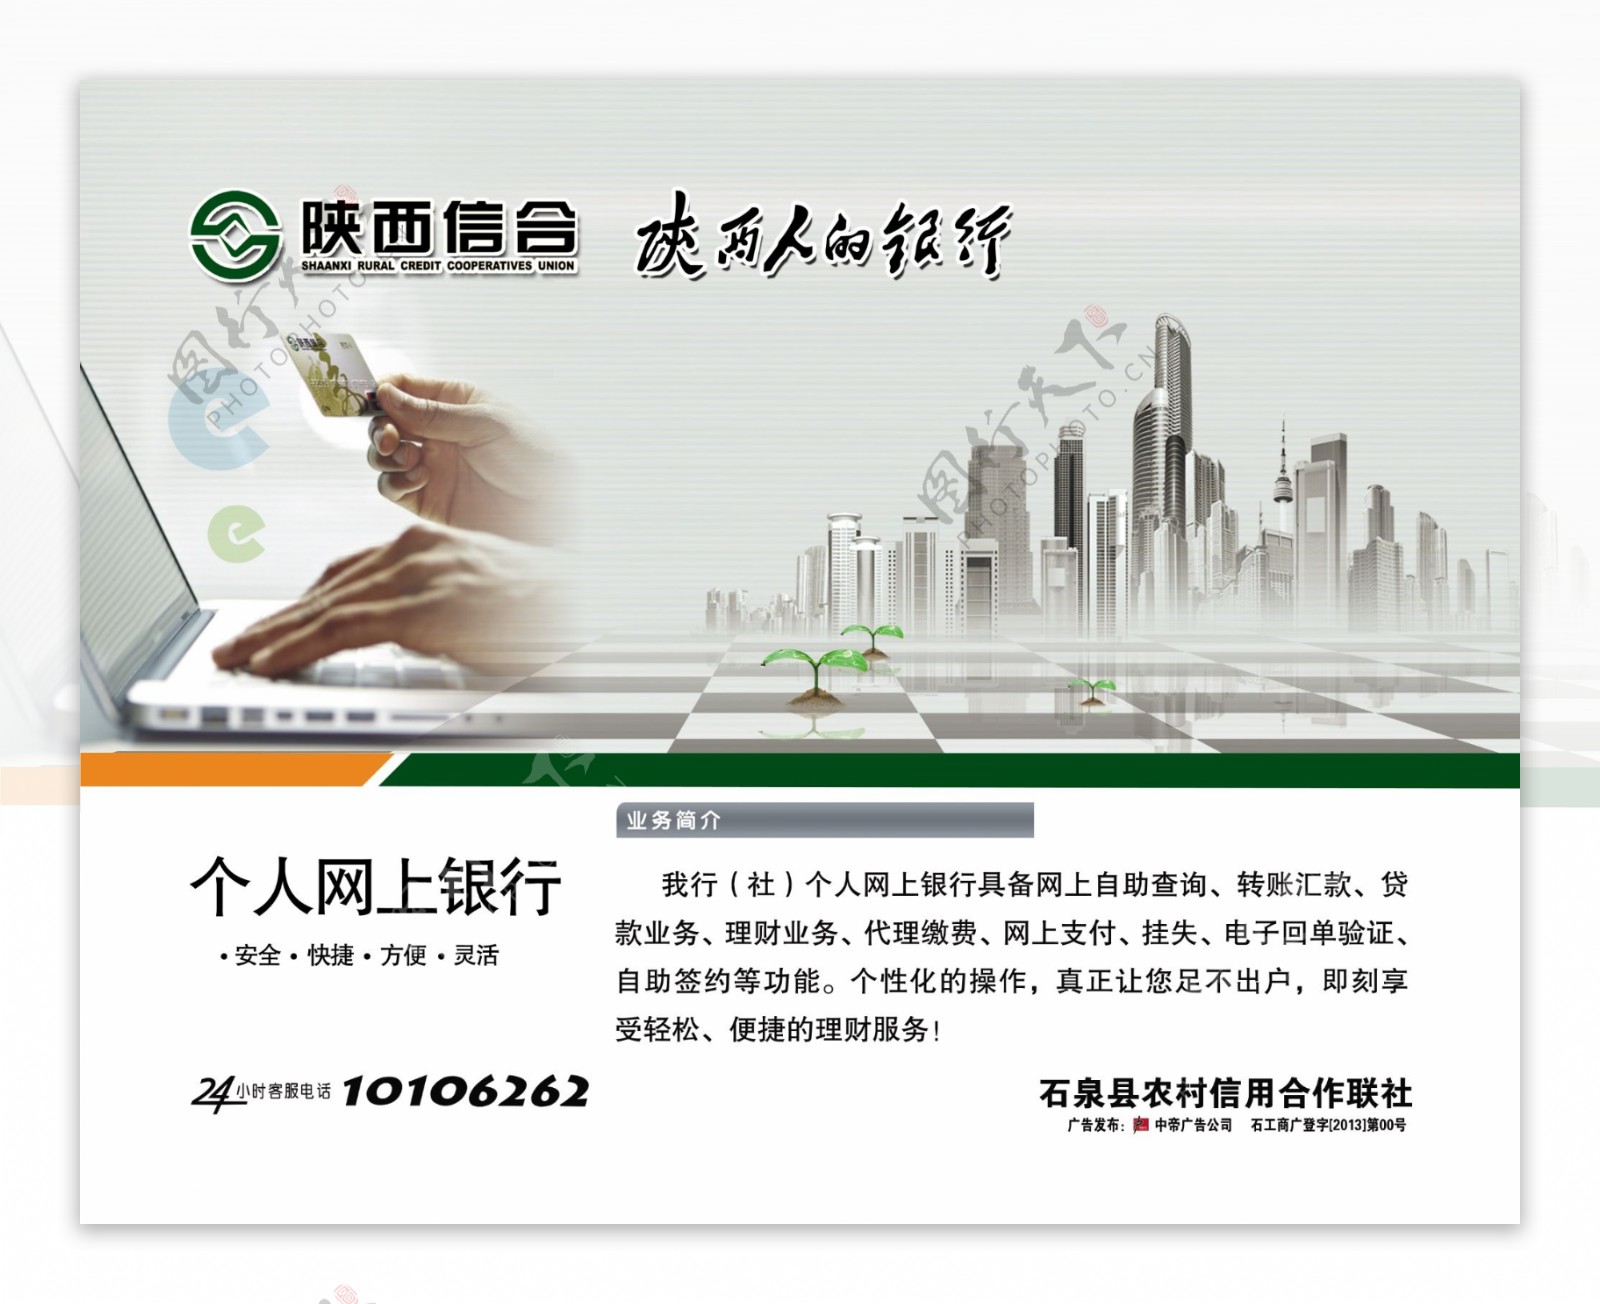 陕西信合个人网上银行海报图片